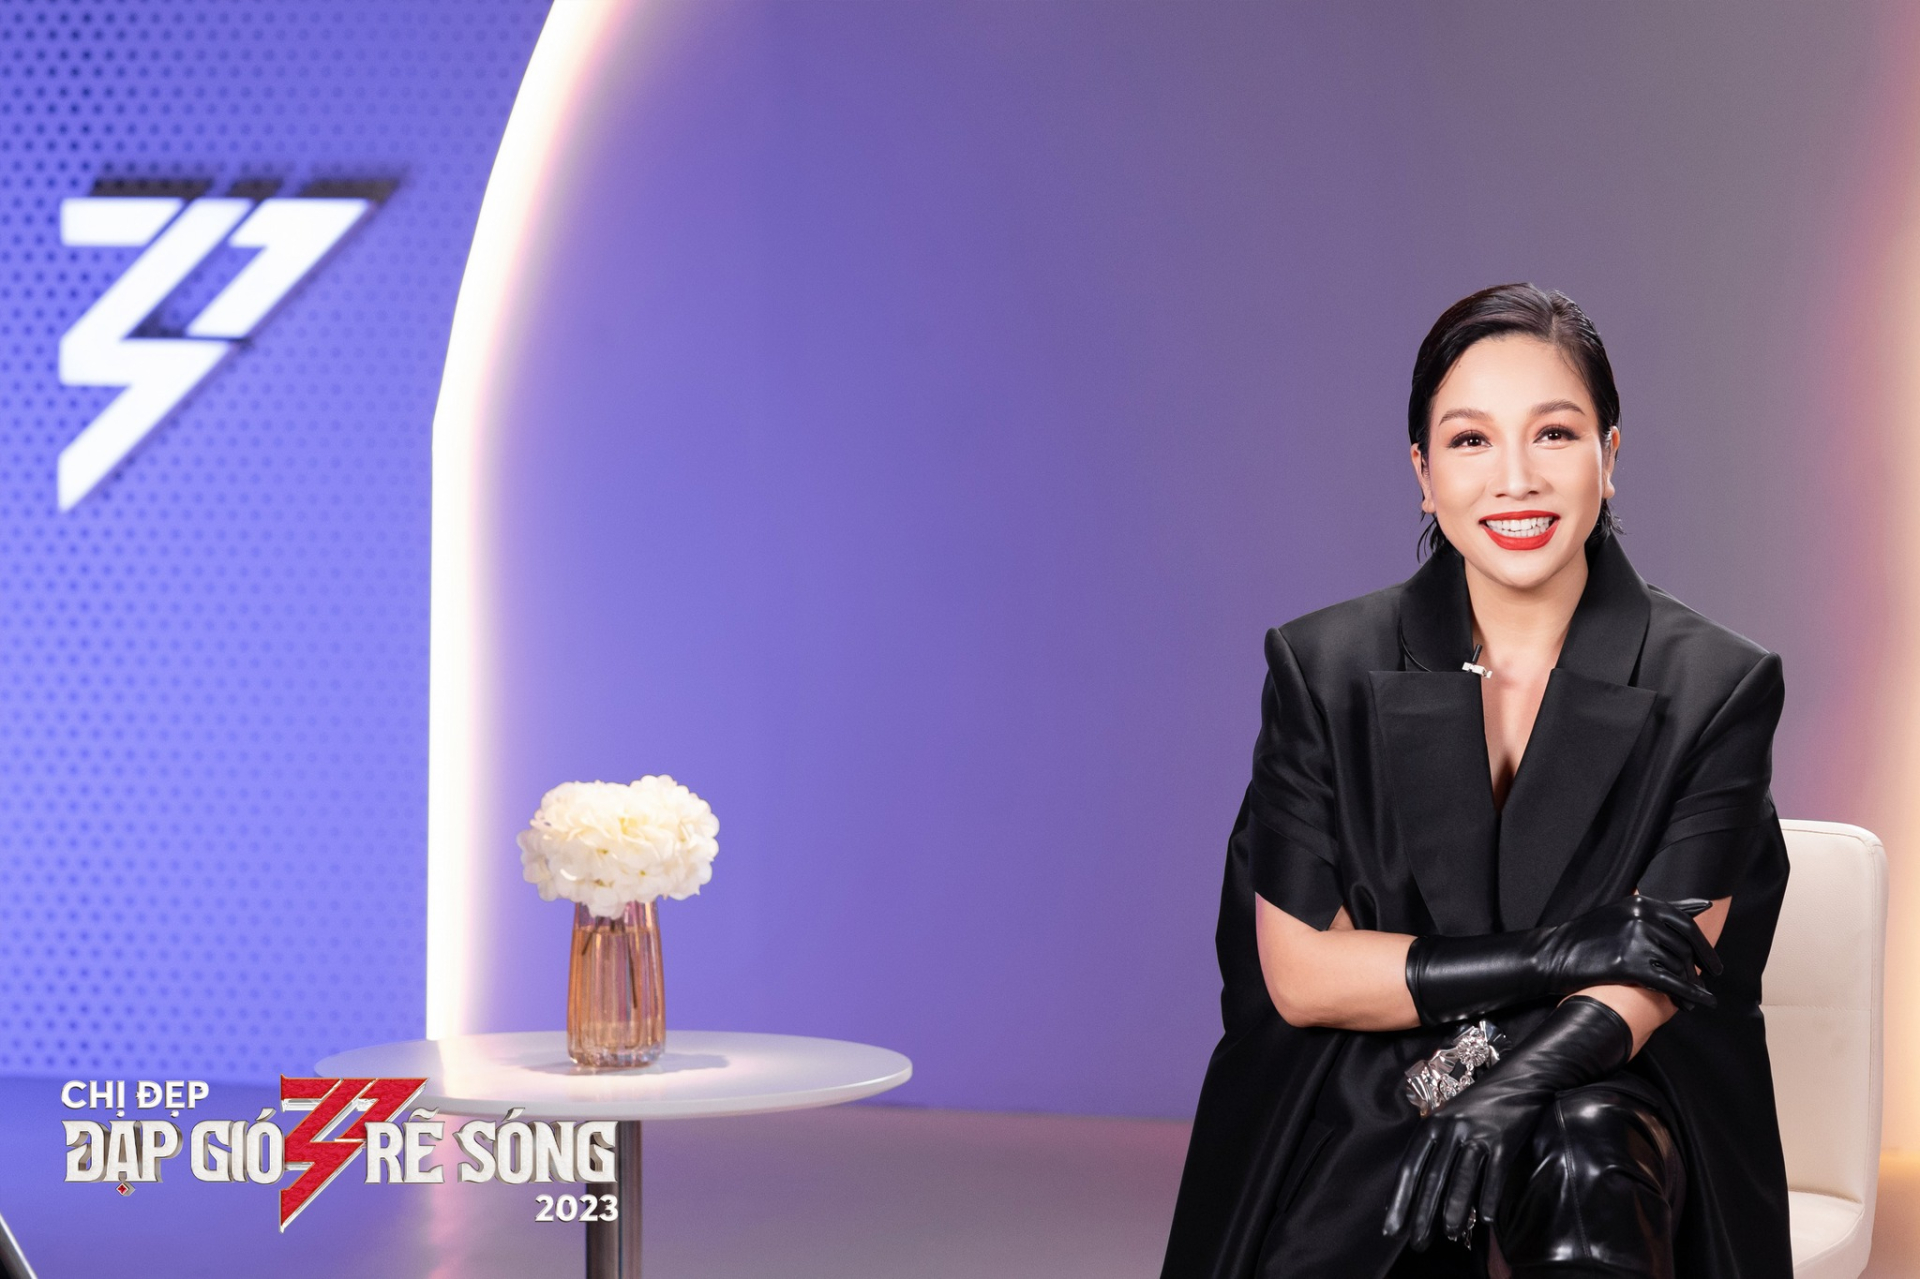 Diva Mỹ Linh tuyên bố lập nhóm nhạc mới trong show 'Chị Đẹp', thành viên gồm những ai đây? - ảnh 2